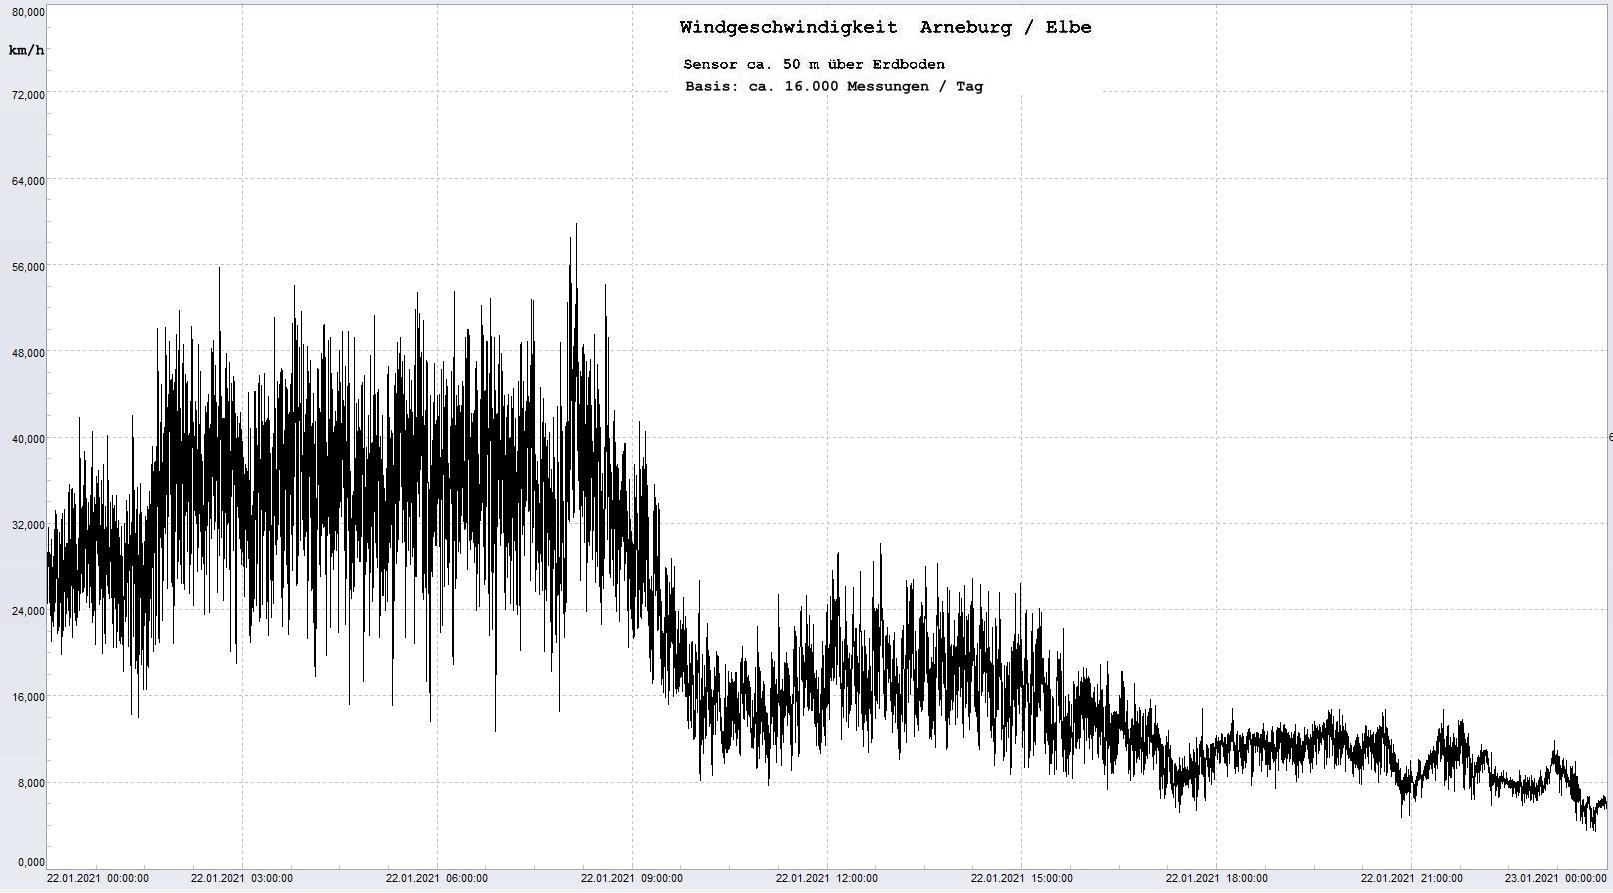 Arneburg Tages-Diagramm Winddaten, 22.01.2021
  Histogramm, Sensor auf Gebäude, ca. 50 m über Erdboden, Basis: 5s-Aufzeichnung